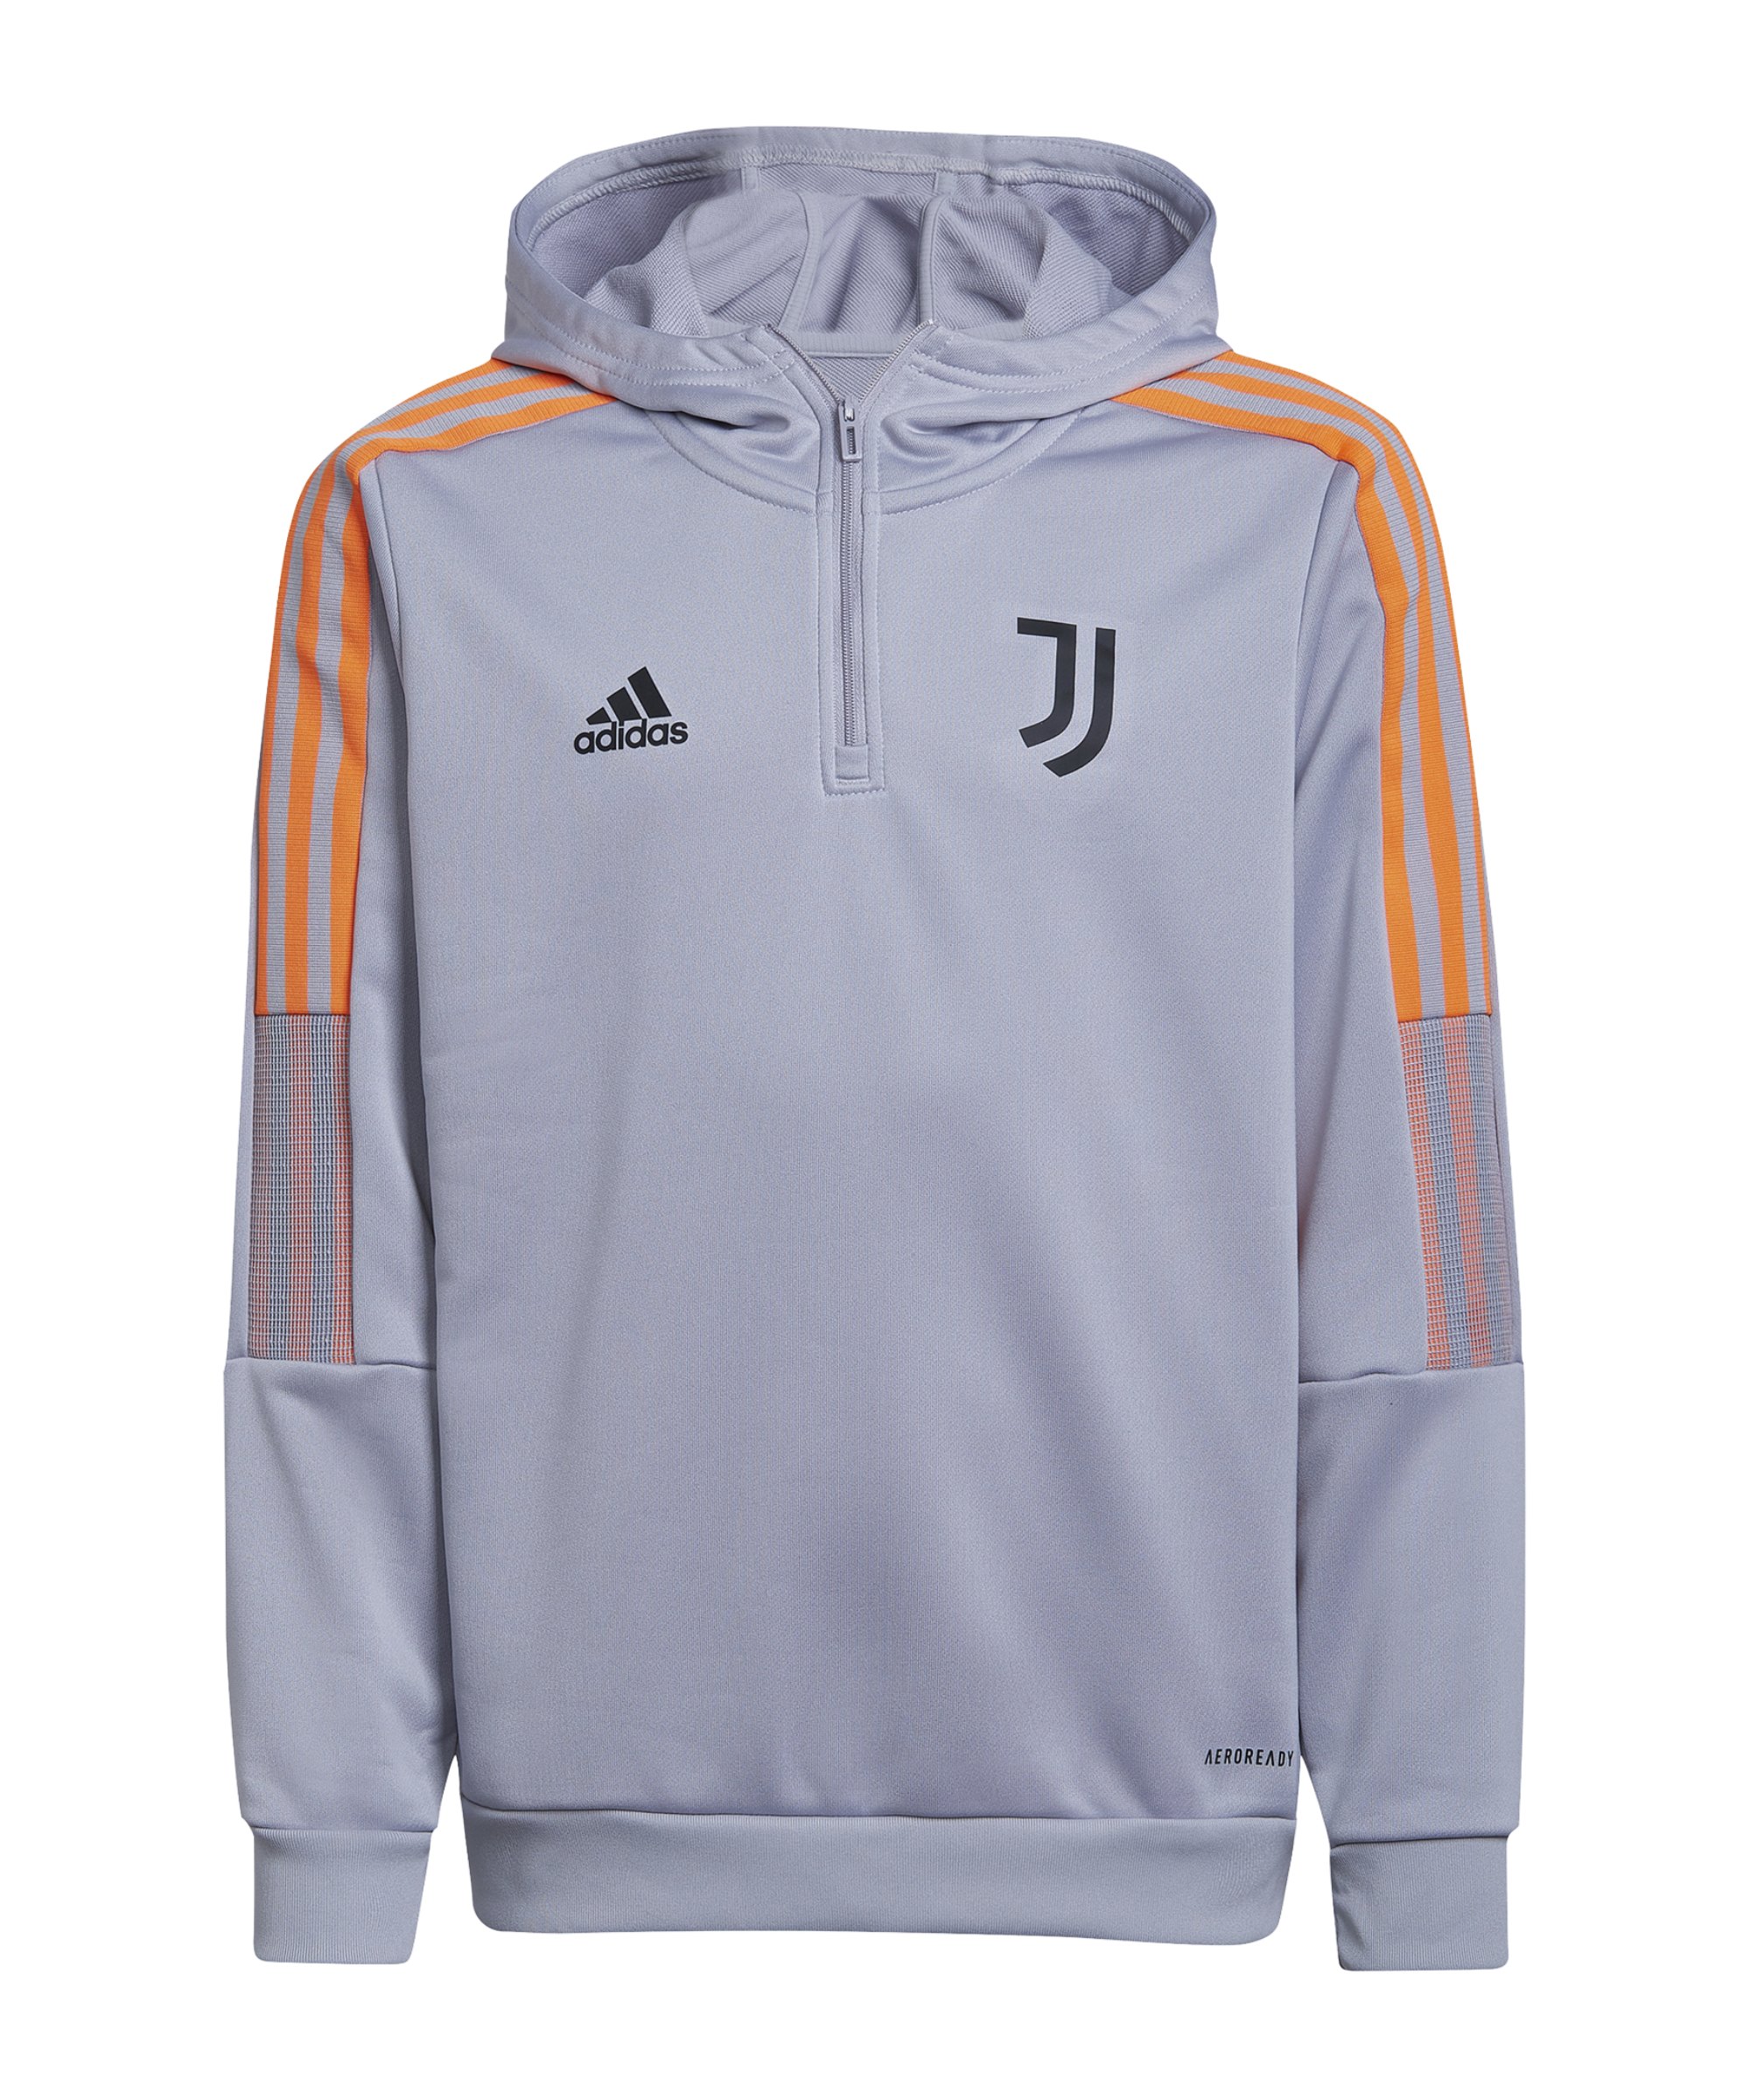 adidas Juventus Turin HalfZip Hoody Kids Grau - grau